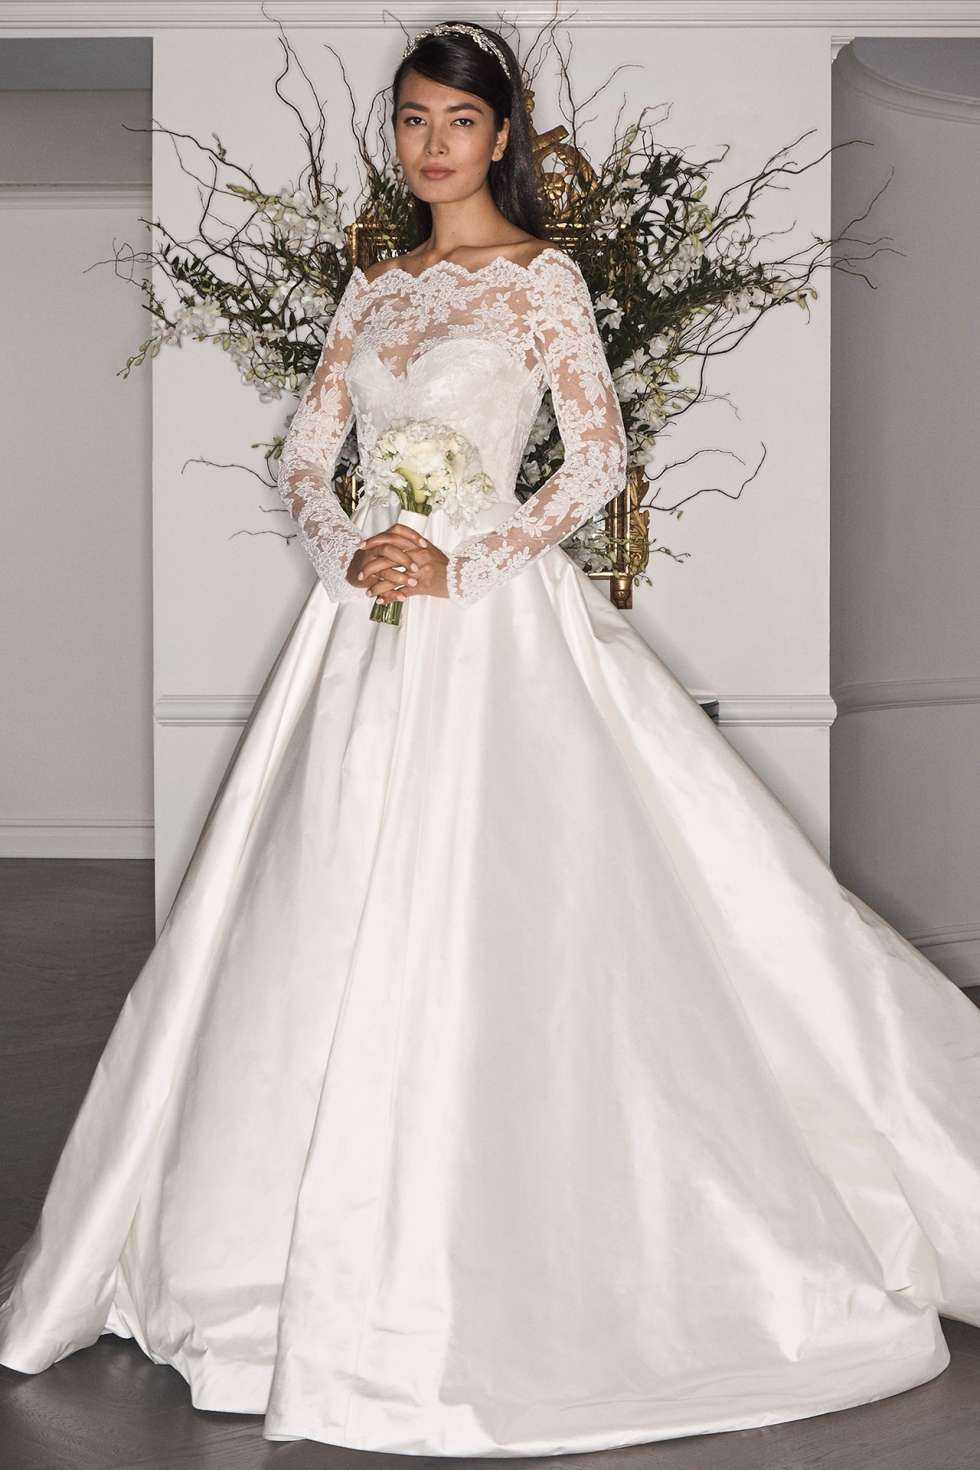 عرض مجموعة رومونا كيفيزا لفساتين الزفاف لخريف 2017 في أسبوع نيويورك لأزياء الزفاف